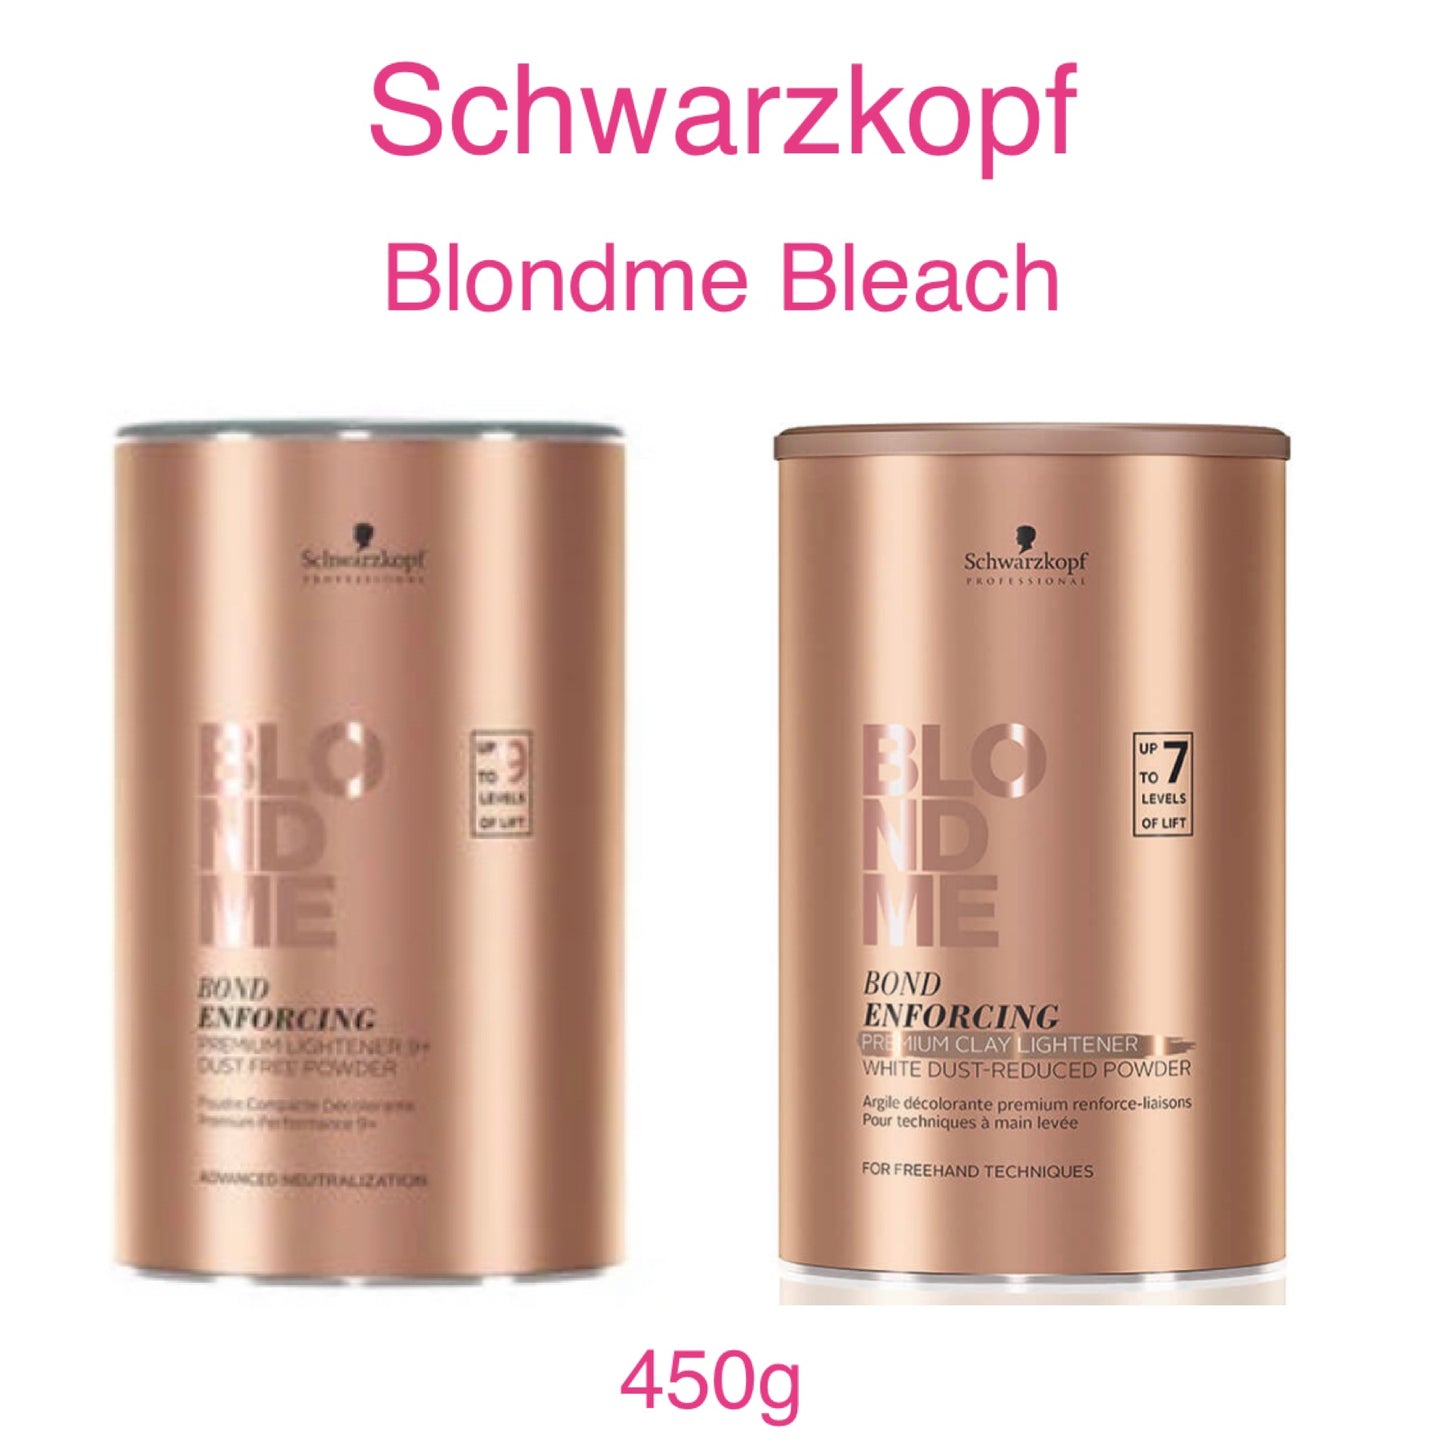 Schwarzkopf Blondme Bleach Powder